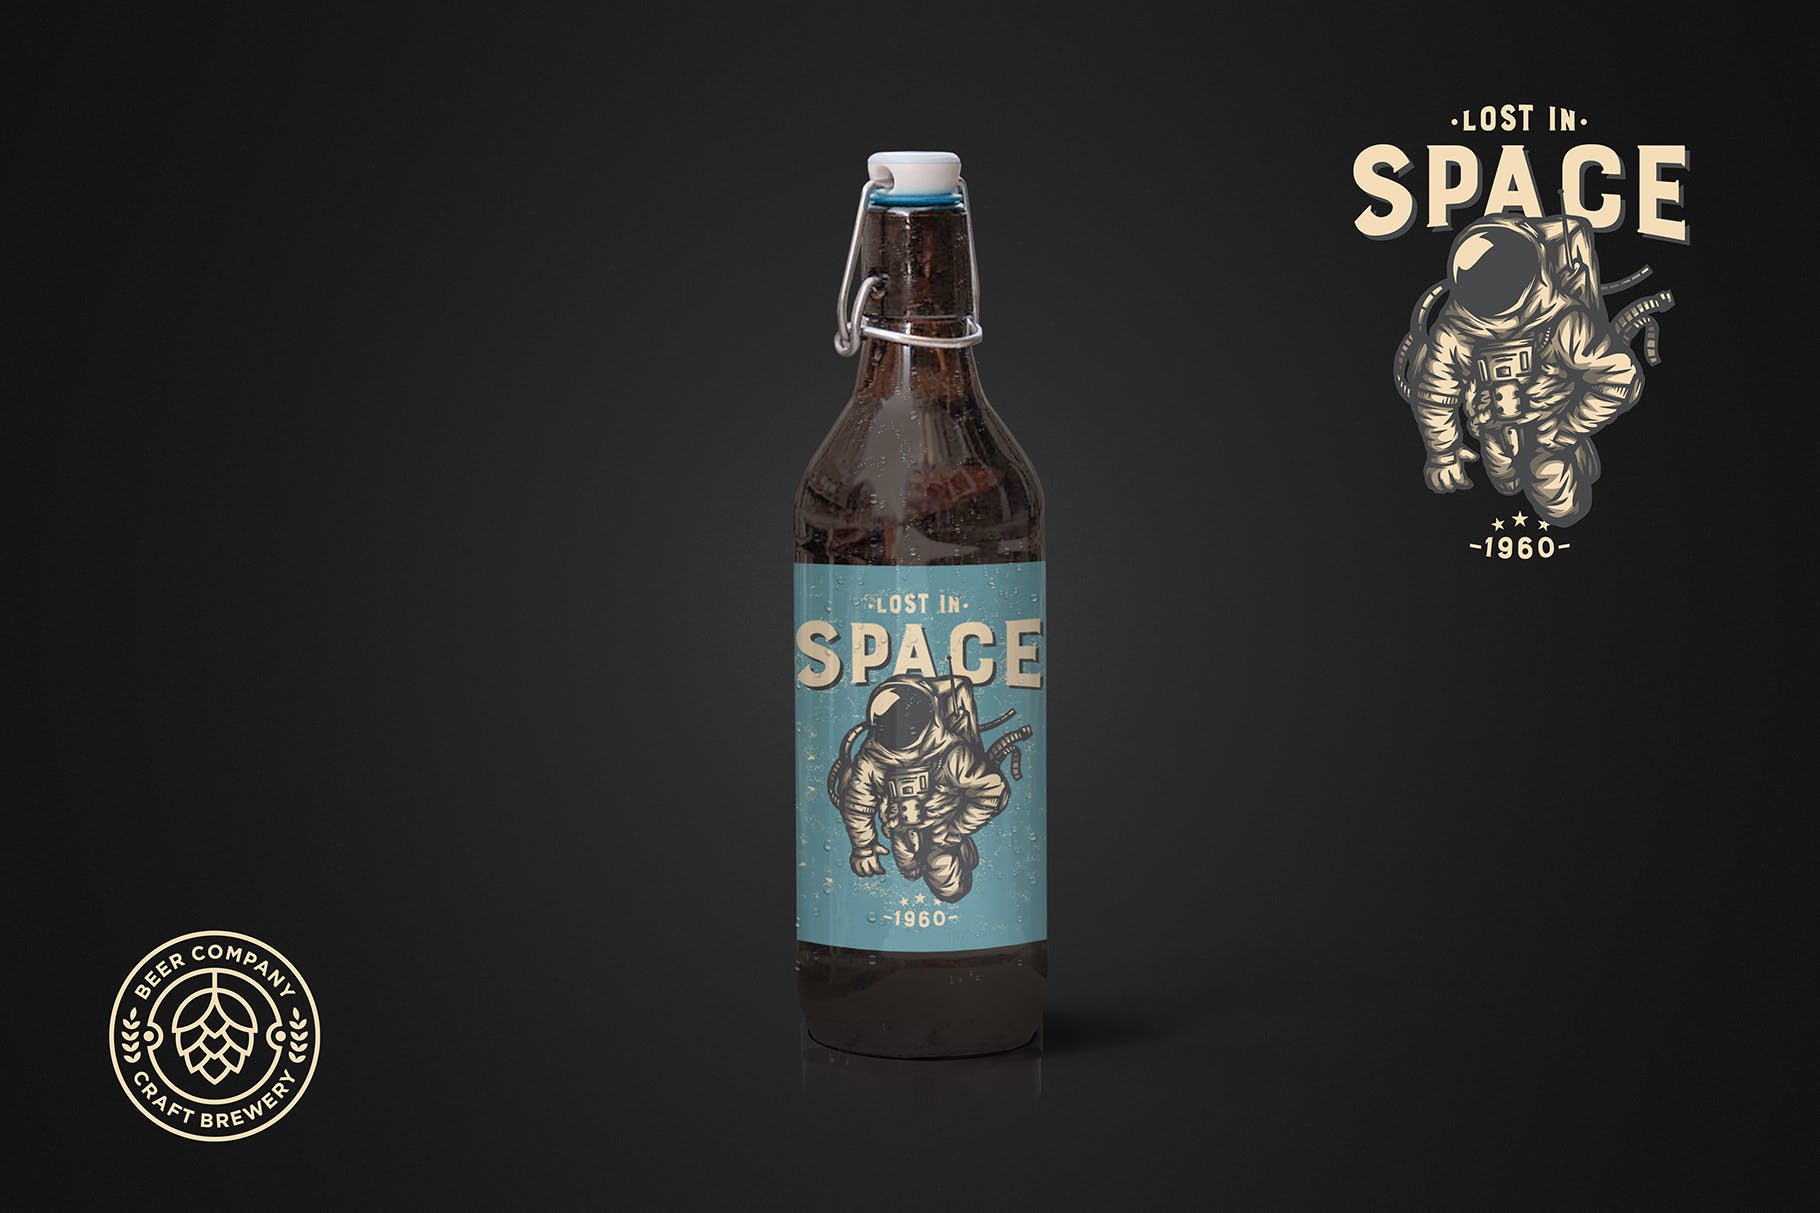 简易瓶盖小支装啤酒瓶外观设计第一素材精选 Clean 50cl Beer Cap Mockup插图(1)